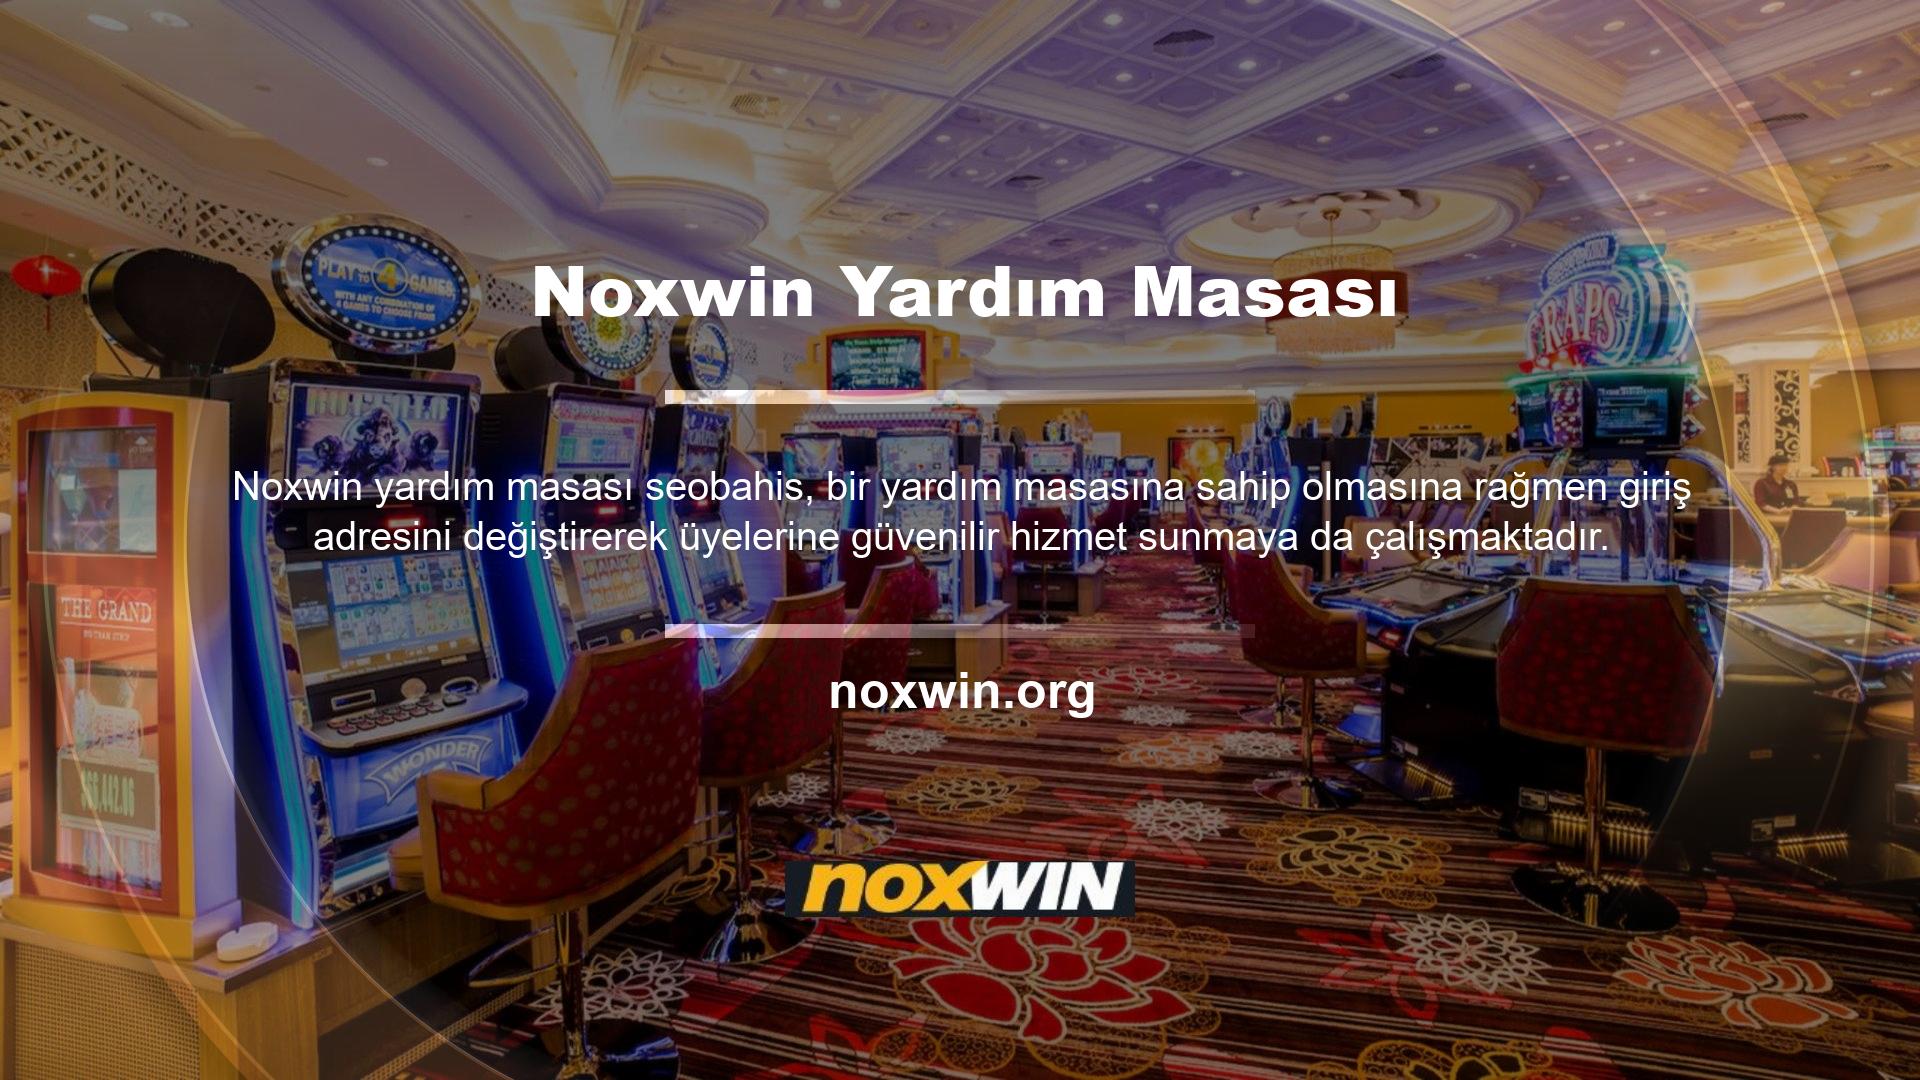 Noxwin dil ve canlı destek hizmetleri sunmaktadır